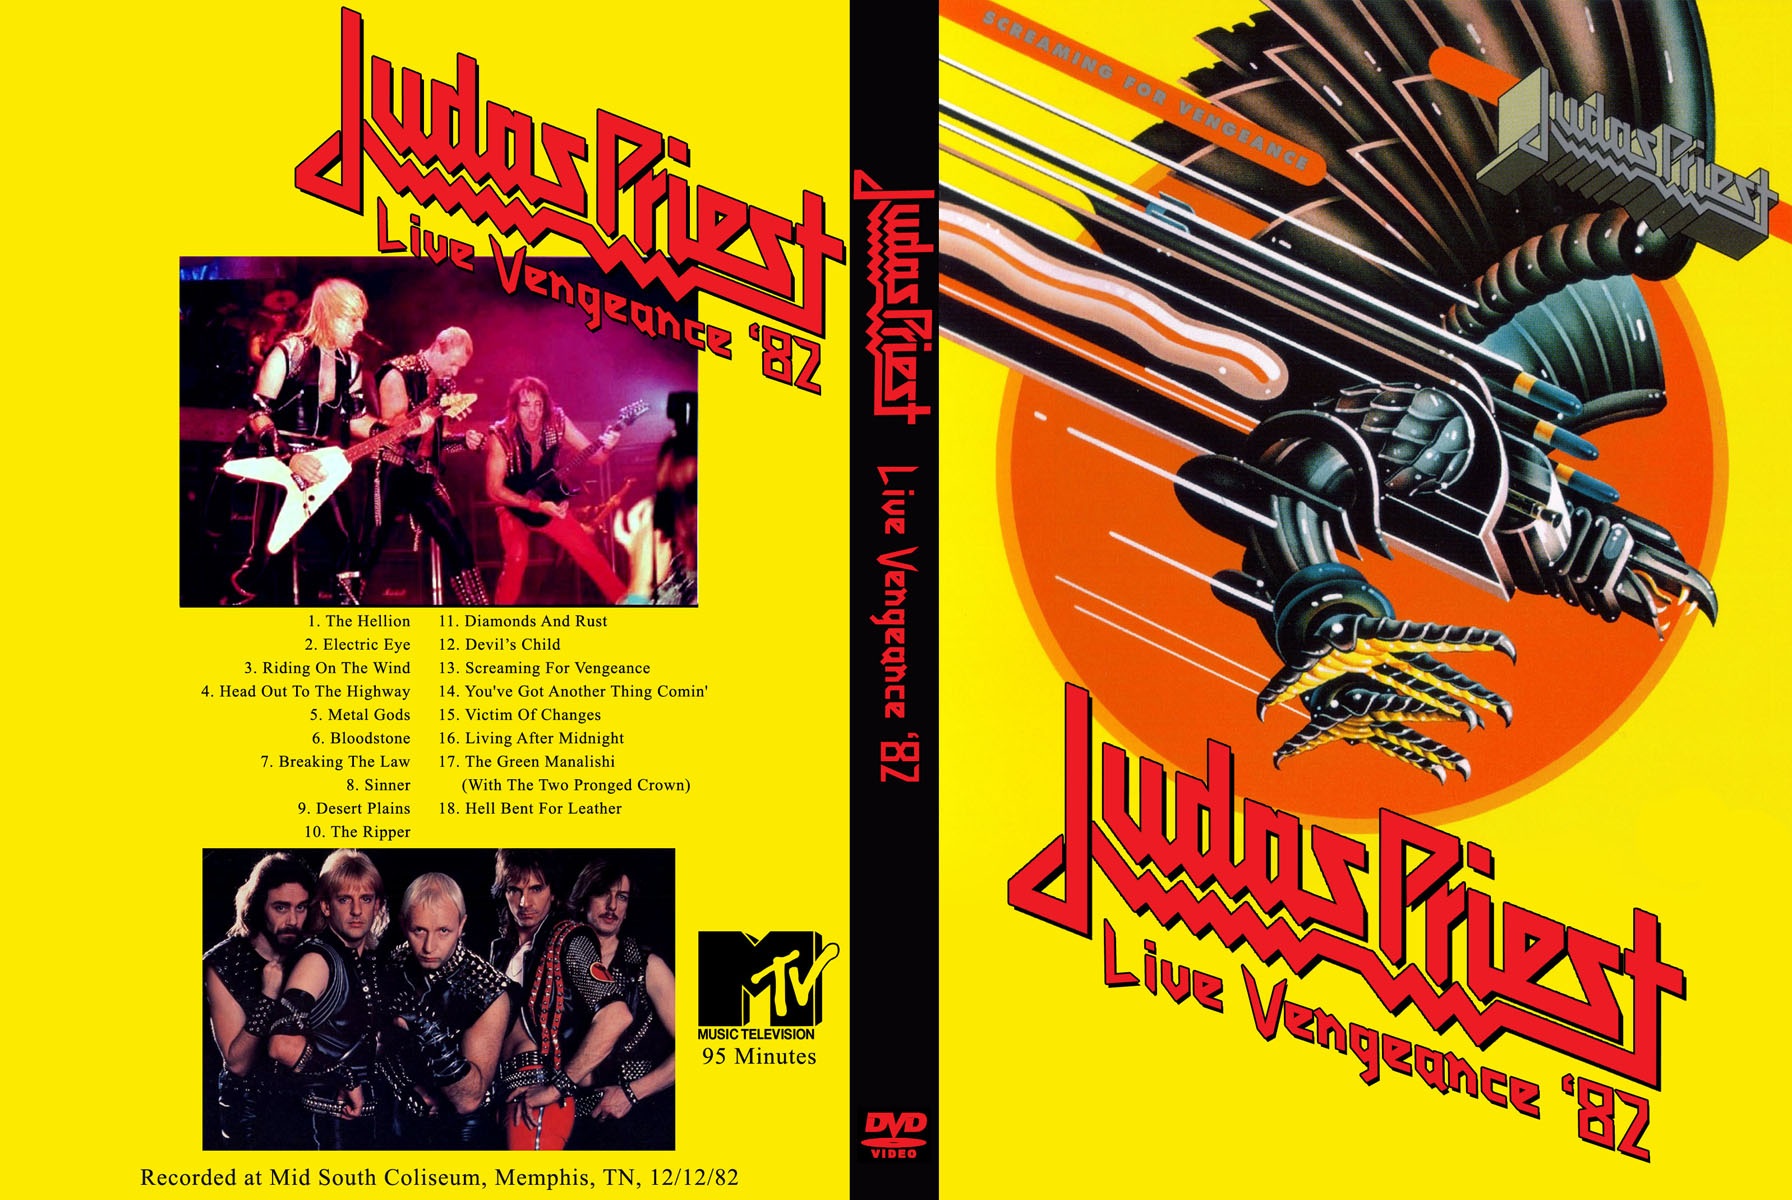 judas priest tour dates 1982